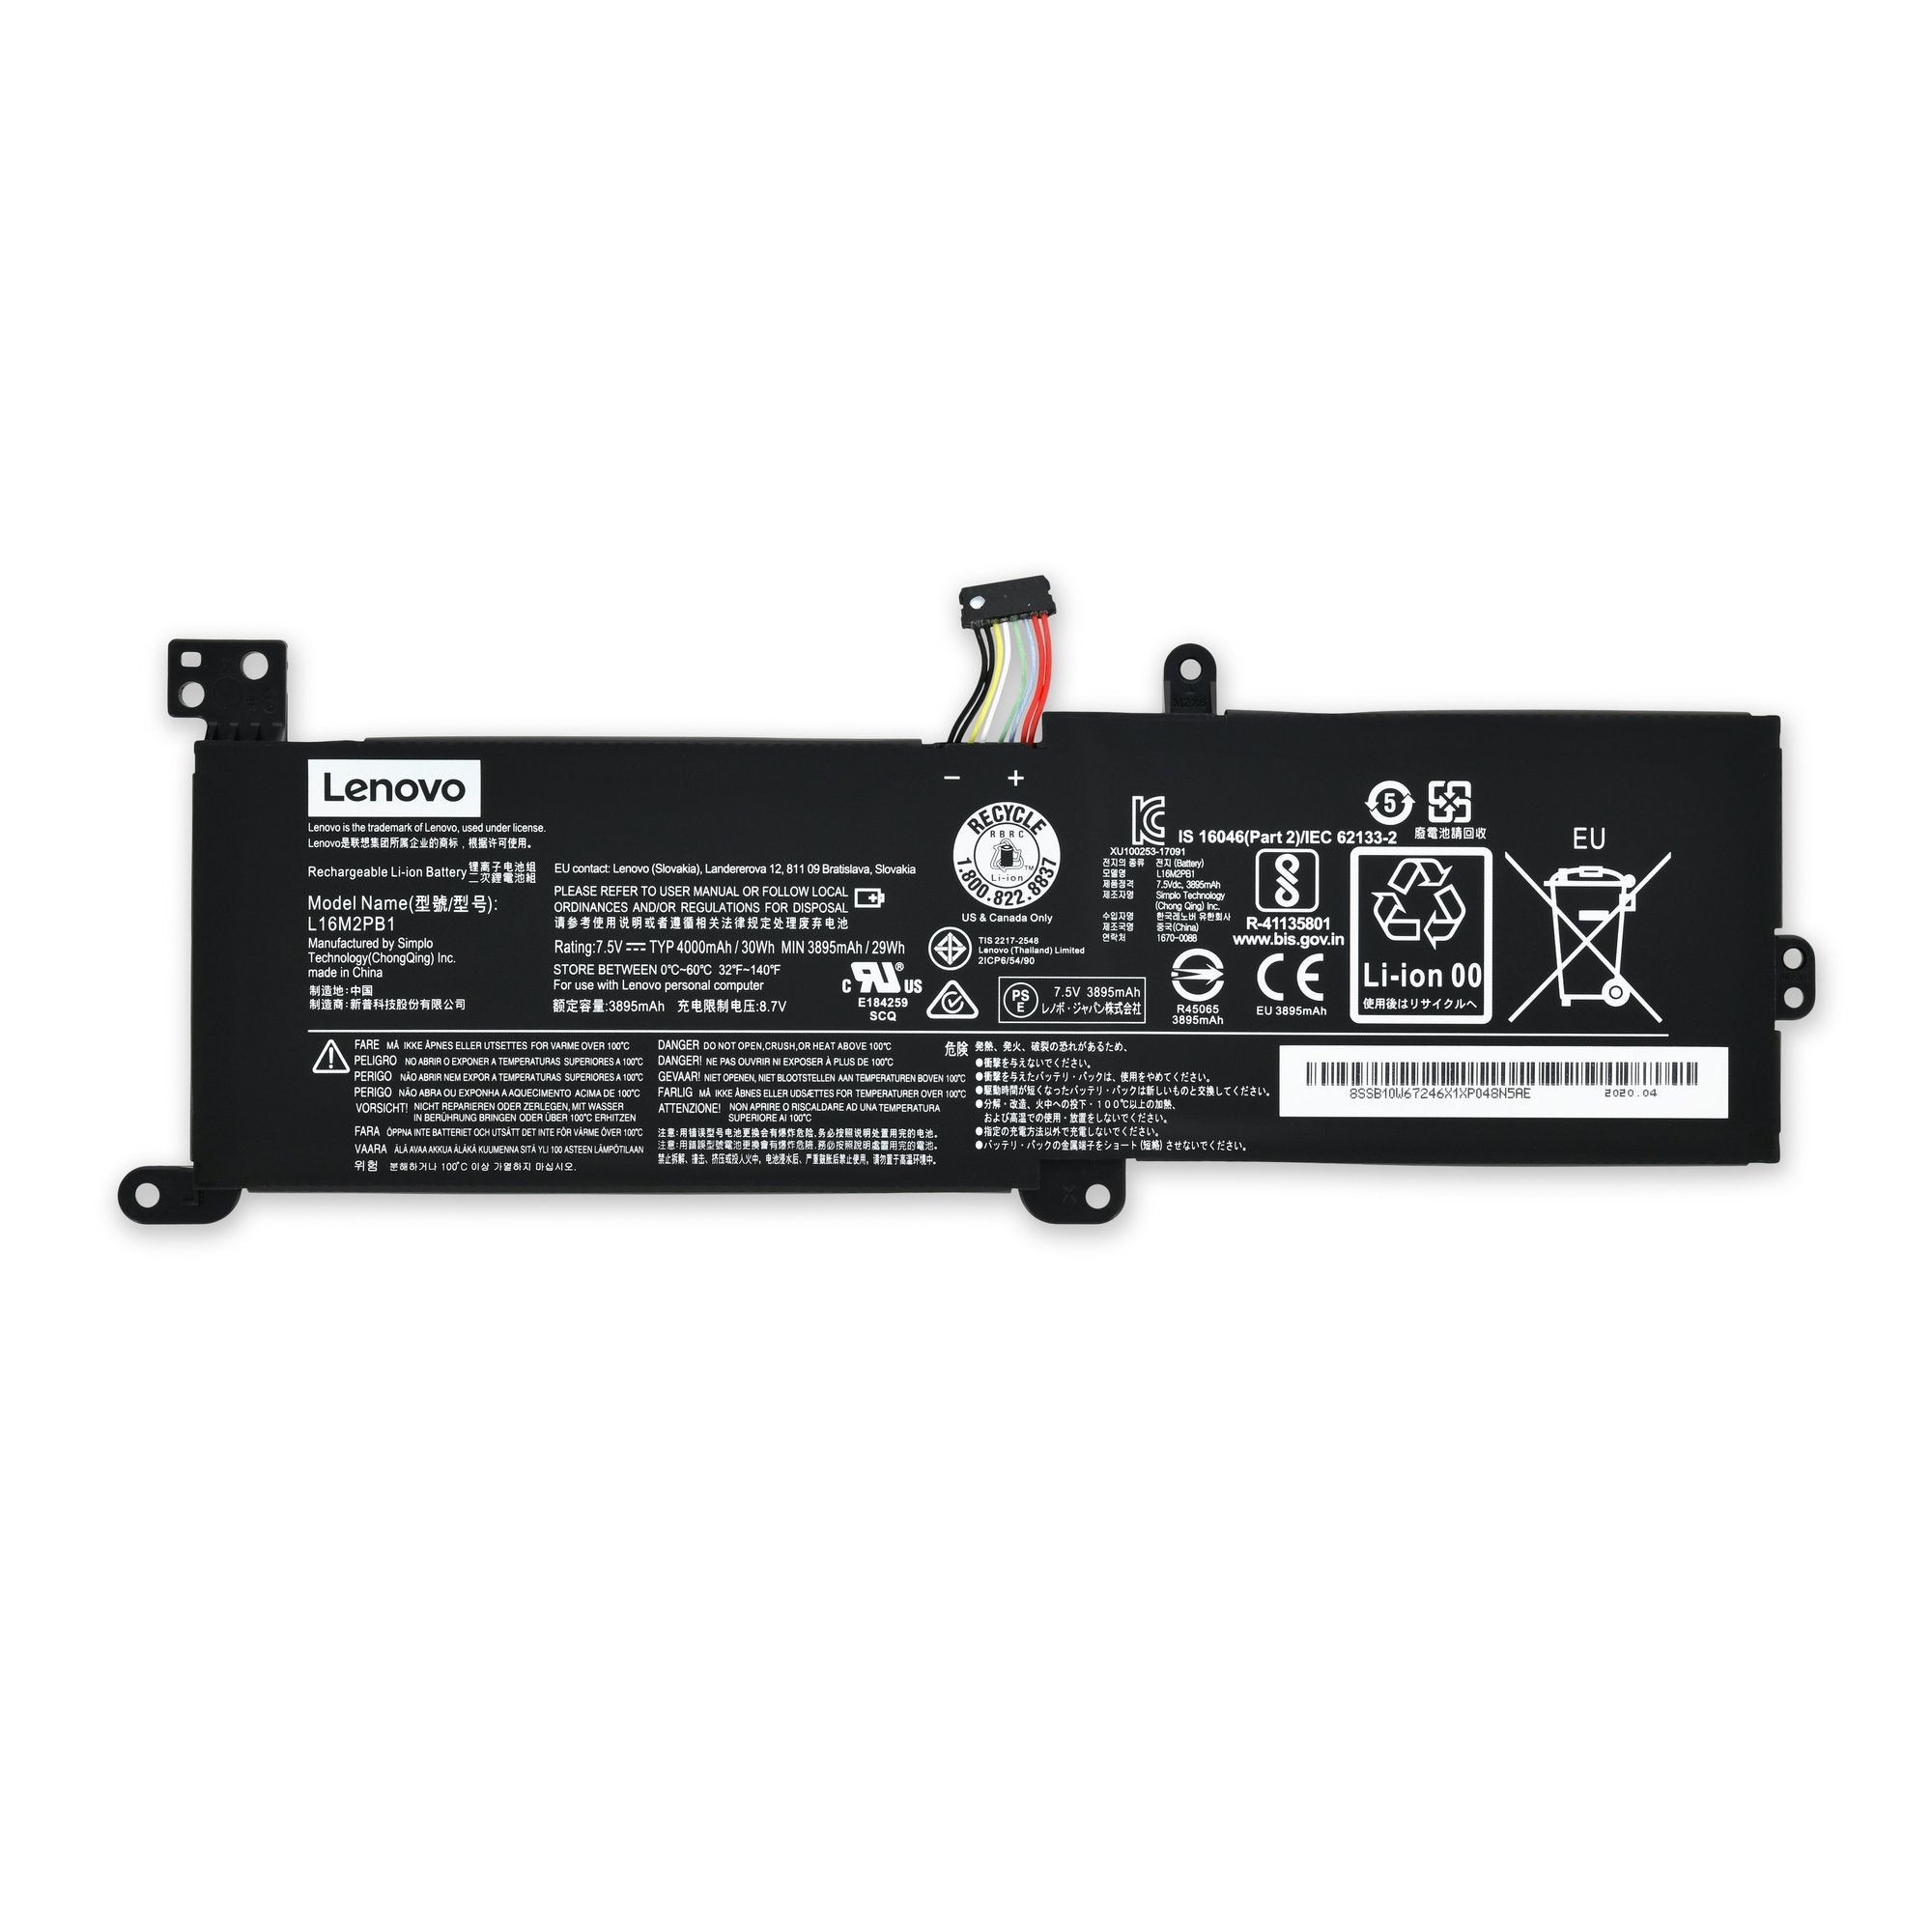 Lenovo IdeaPad 320-14, 520-15, V320-17 Battery - Genuine New